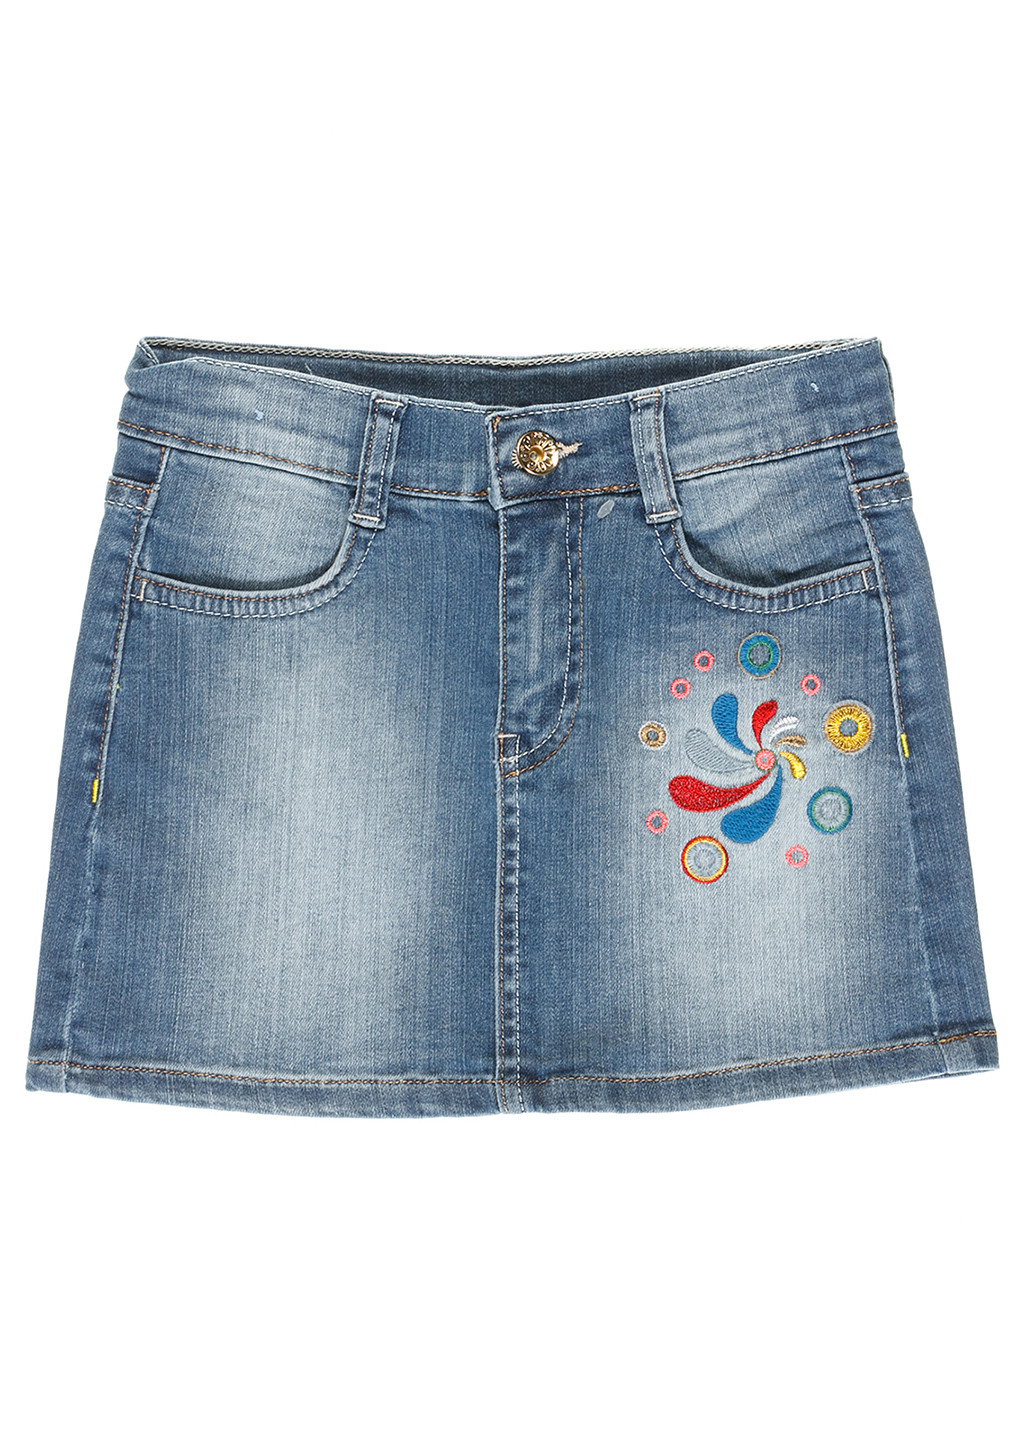 Синяя джинсовая с абстрактным узором юбка Nasimo мини